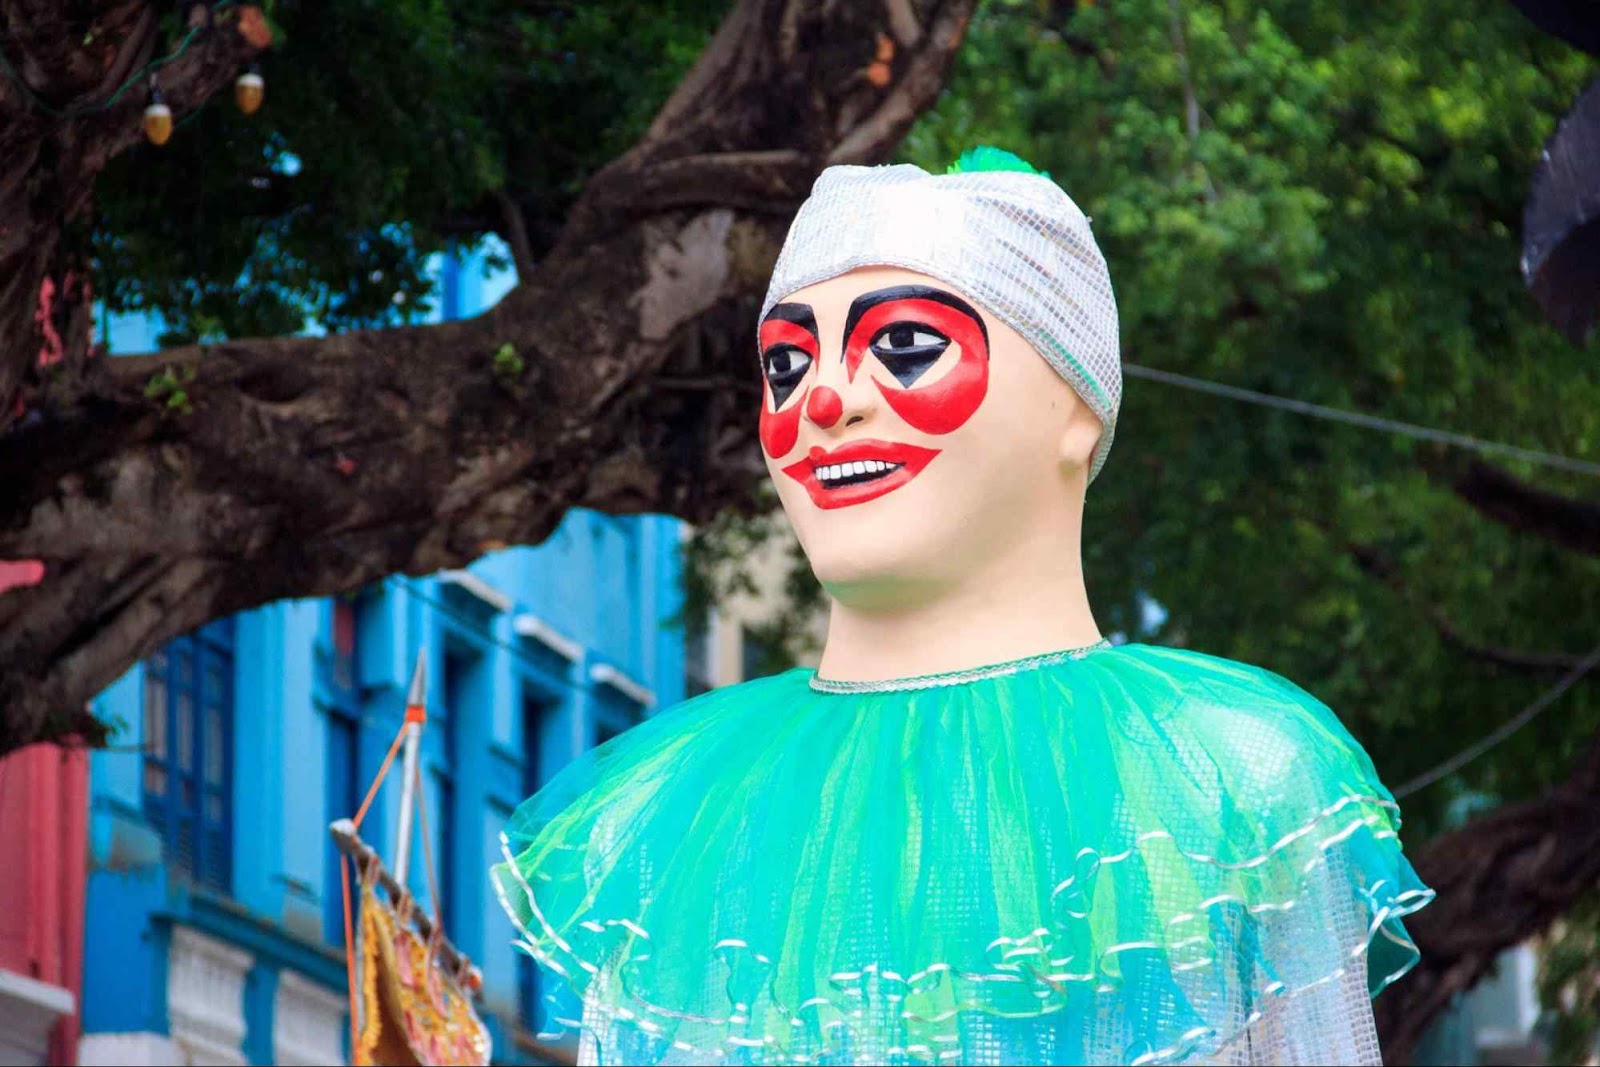 Boneco gigante típico do Carnaval de Olinda. Ele representa um homem vestido de palhaço, com pintura facial vermelha e trajes coloridos.